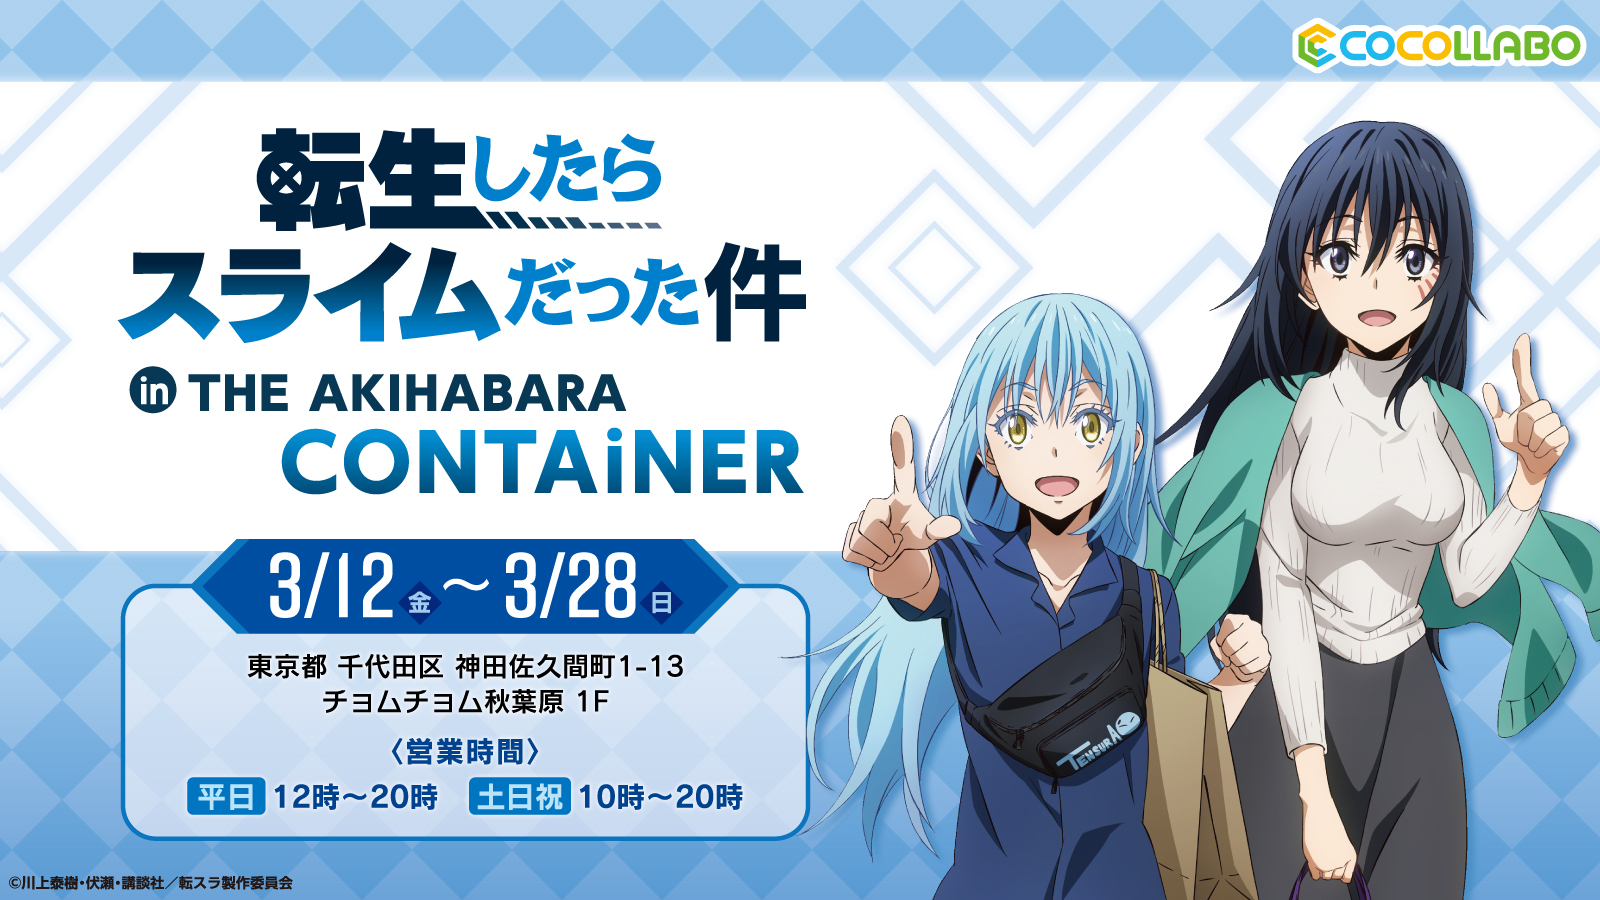 Tvアニメ 転生したらスライムだった件 のオンリーショップが The Akihabara Container にて3月12日 金 より開催 21年3月4日 エキサイトニュース